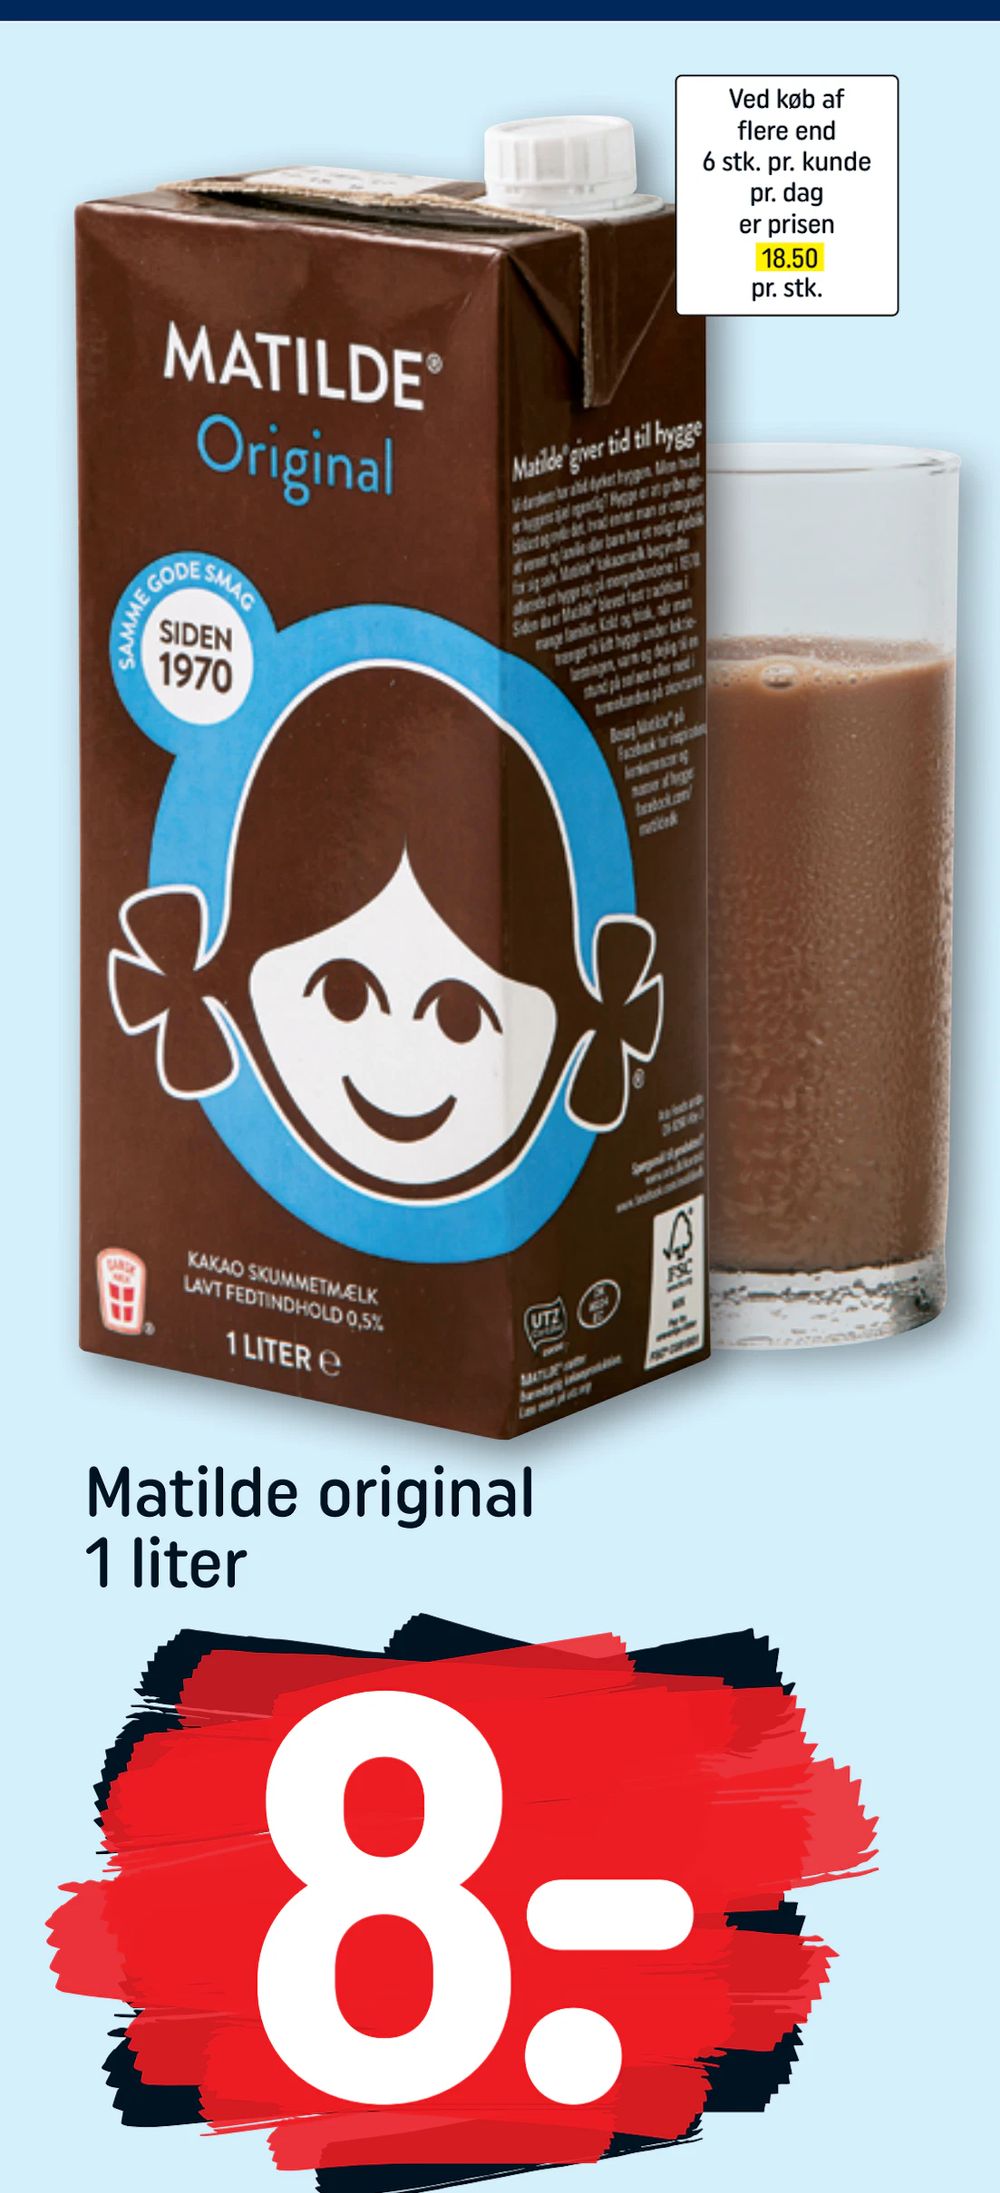 Tilbud på Matilde original 1 liter fra REMA 1000 til 8 kr.